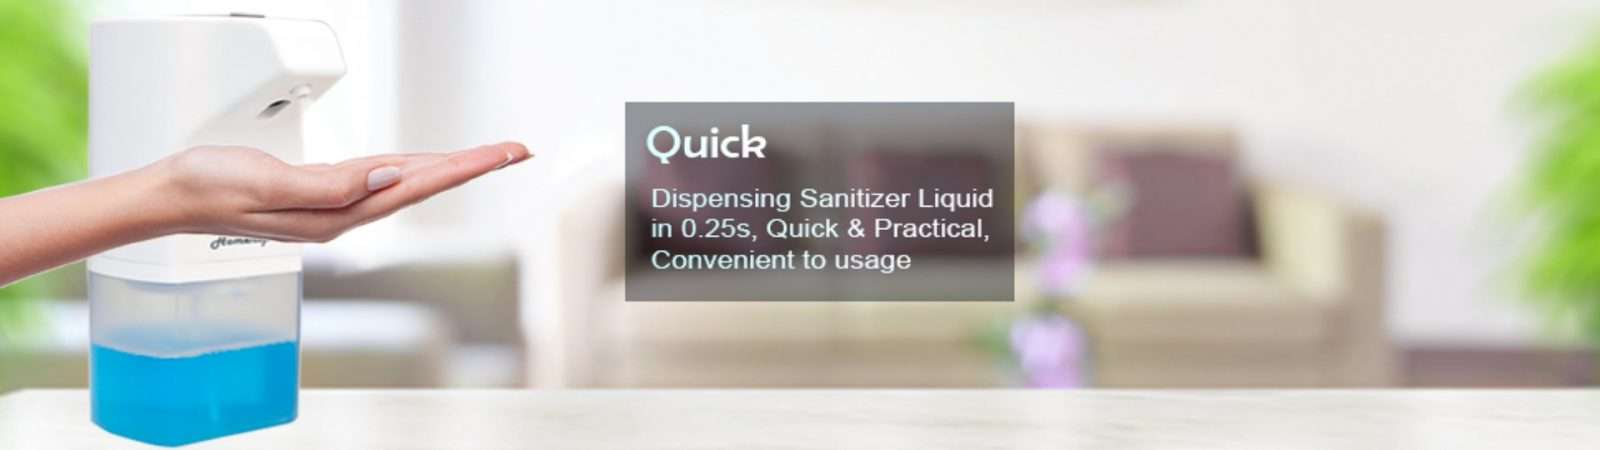 quick dispensing automatic sanitizer dispenser